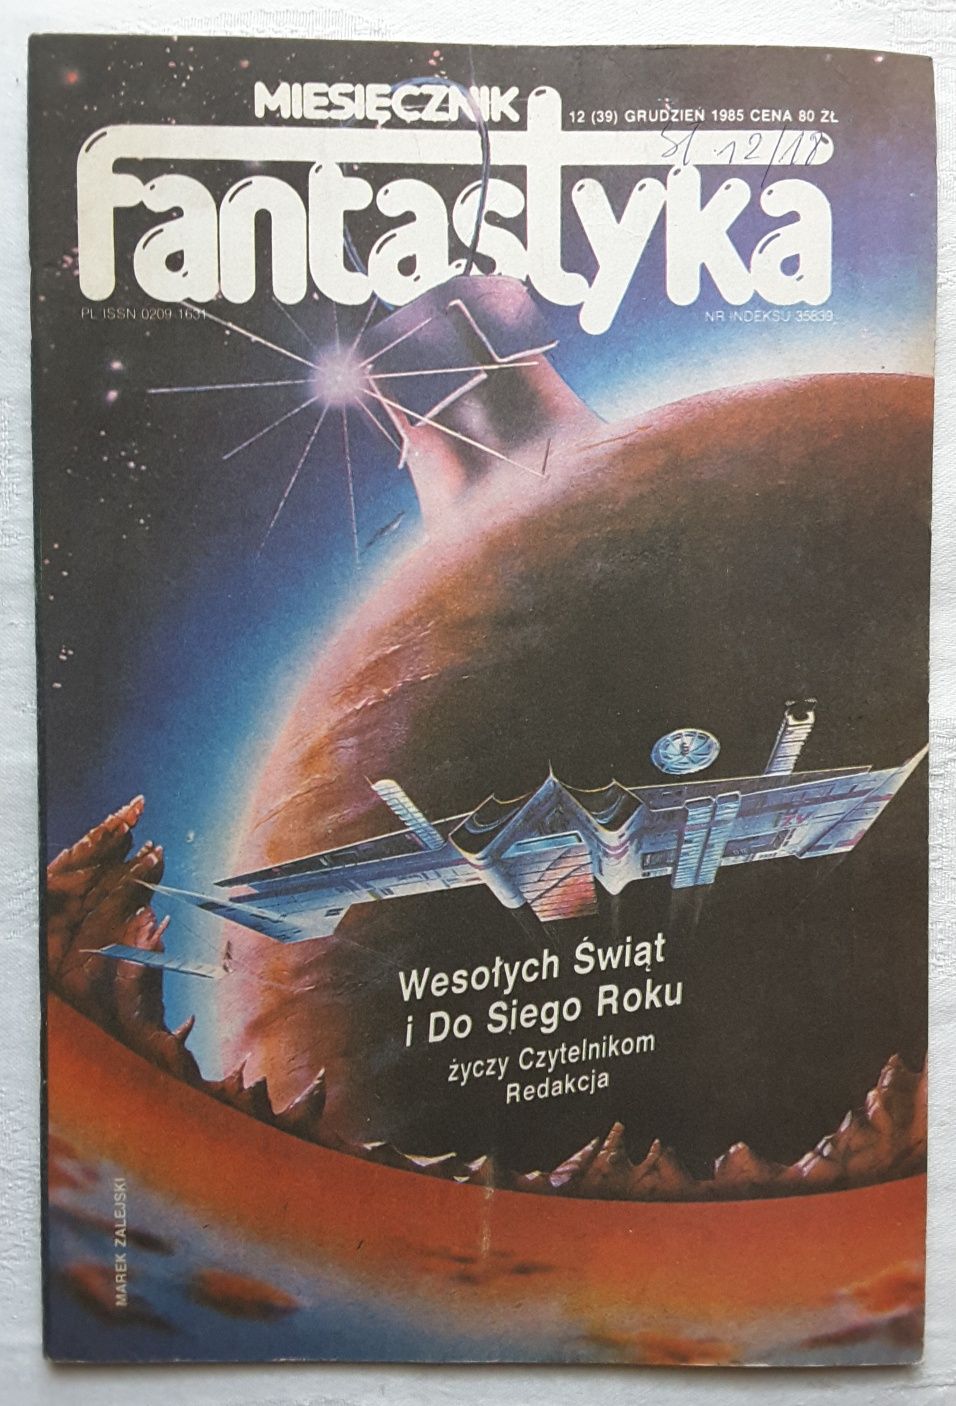 Czasopismo Fantastyka nr 12 (39) Grudzień 1985